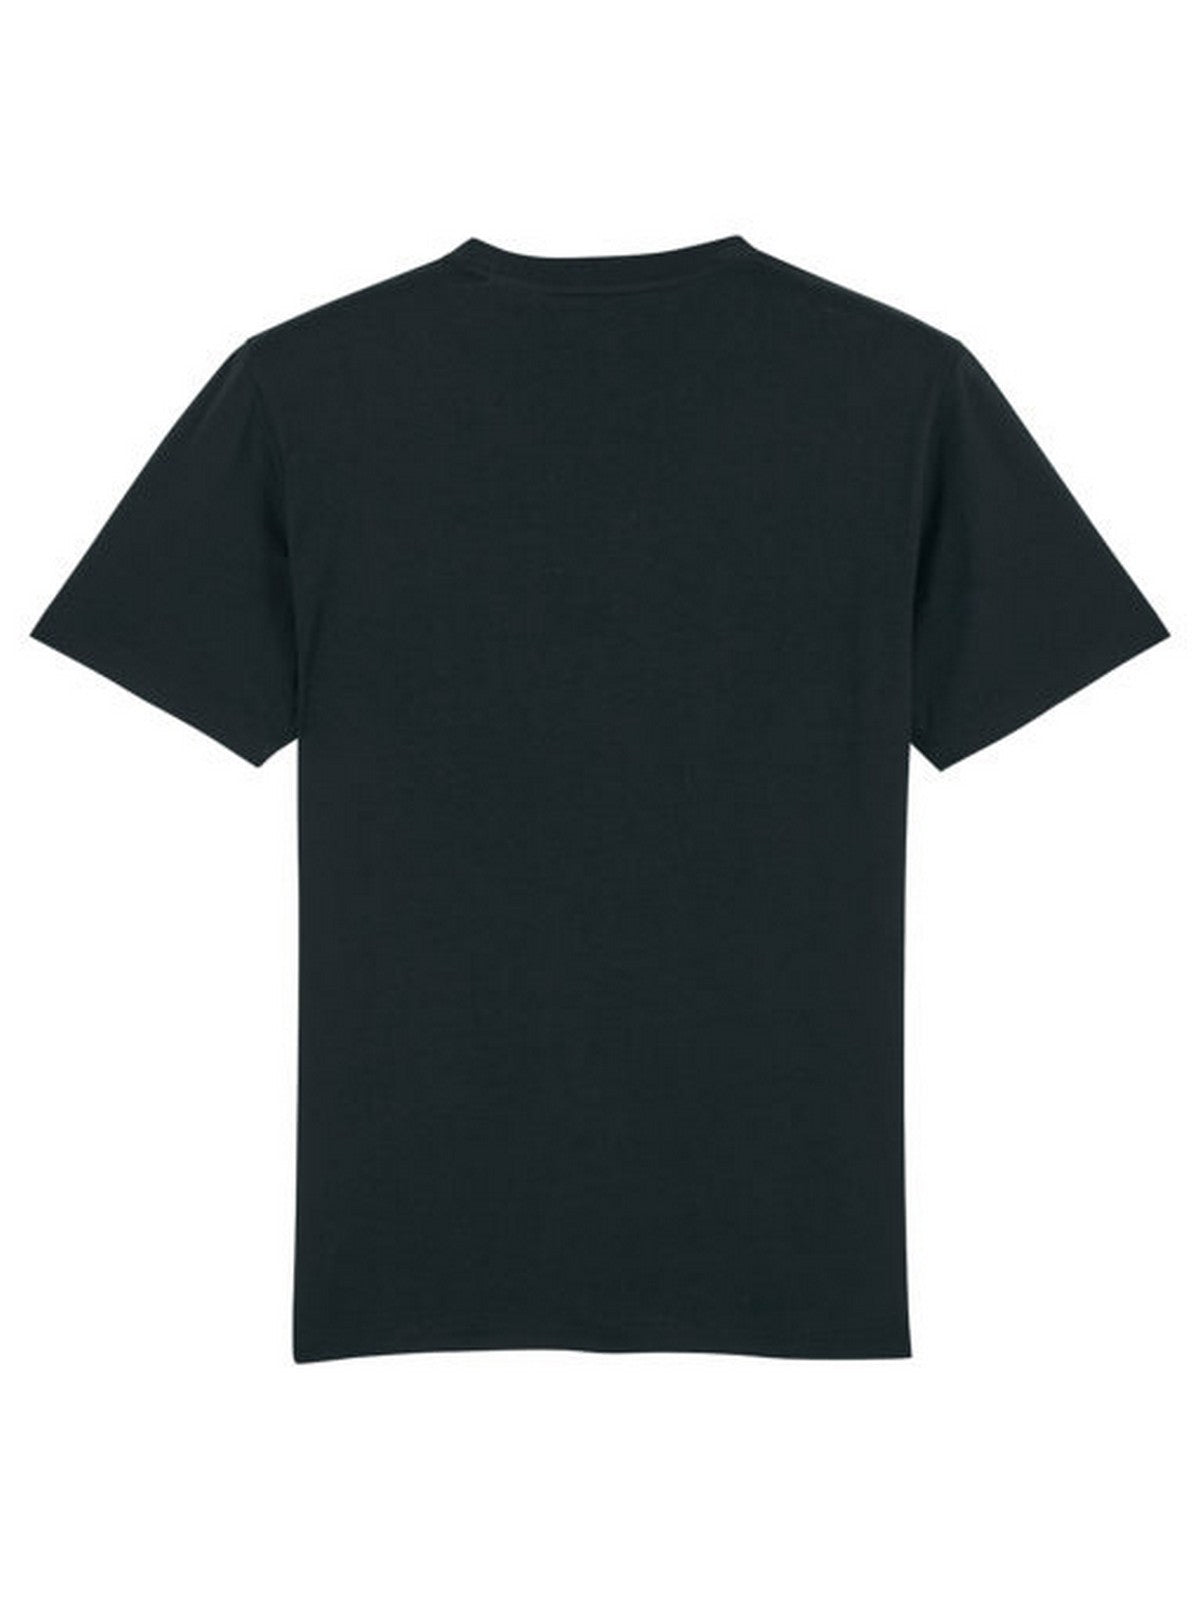 BARON FILOU T-Shirt e Polo Uomo  T-SHIRT FILOU II Nero